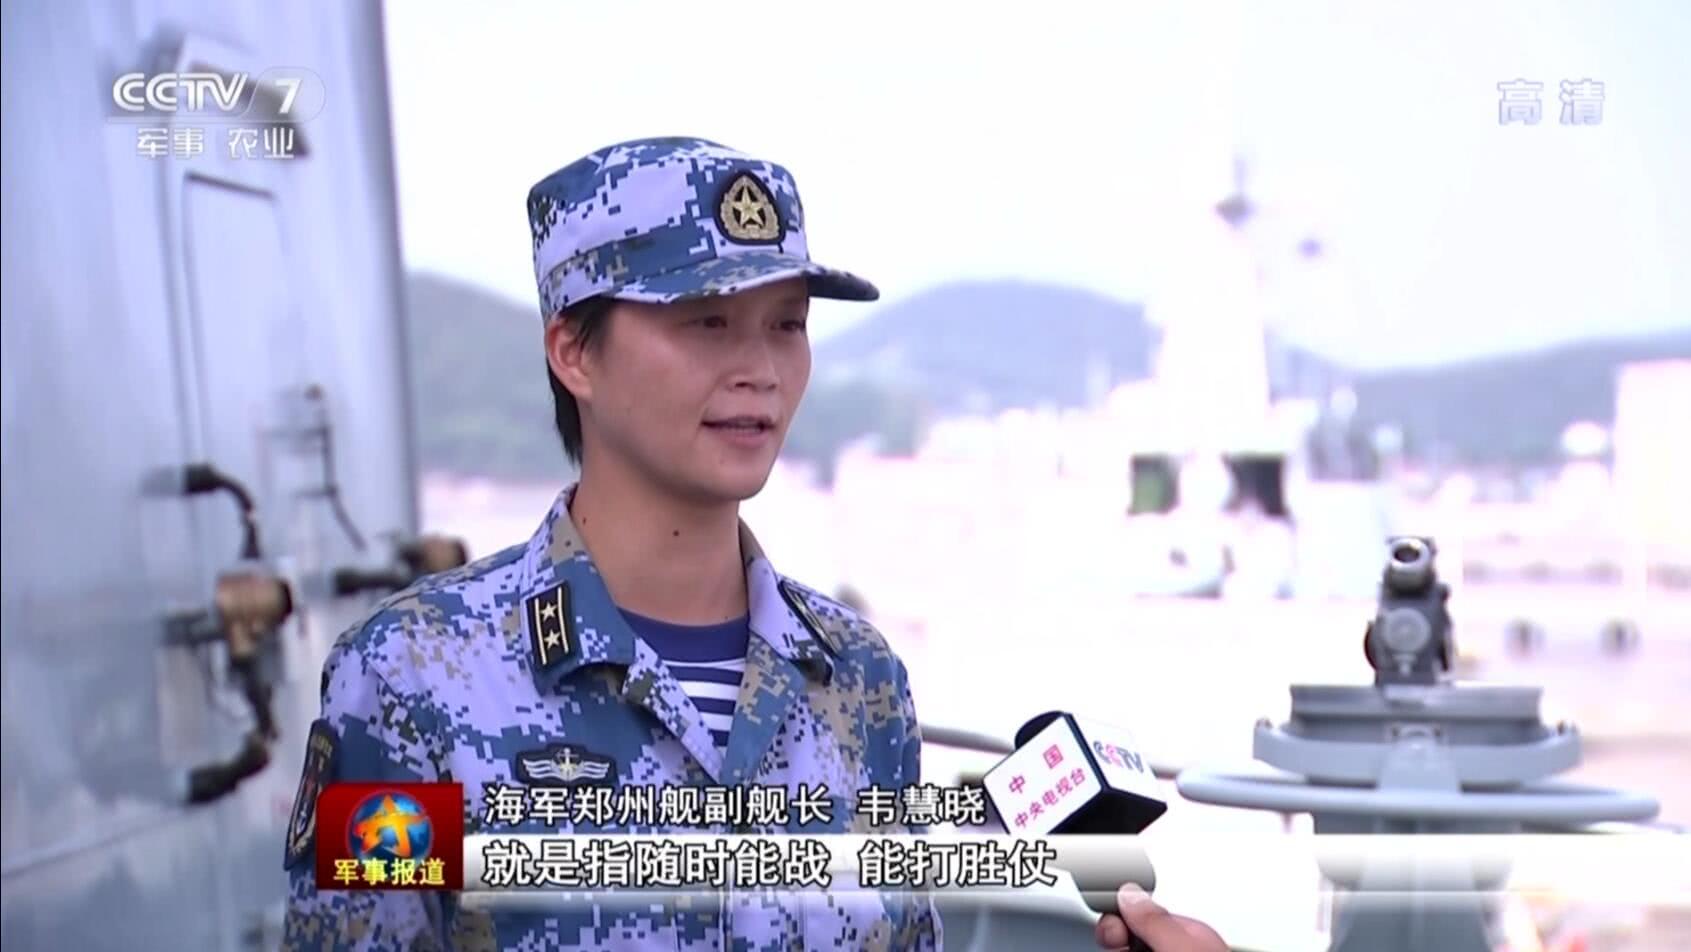 Tháng 3/2016, bà được bổ nhiệm làm hạm phó tàu khu trục Trường Xuân và là nữ hạm phó đầu tiên trong lịch sử PLA. Bà đã tham gia nhiều cuộc diễn tập chung trên biển của quân đội Liên hợp quốc - Nga - Trung Quốc. Trước khi được đề bạt làm hạm trưởng tháng 9/2017, bà Wei giữ vị trí hạm trưởng tập sự của tàu khu trục tên lửa Trịnh Châu thuộc hạm đội Hoa Đông. 